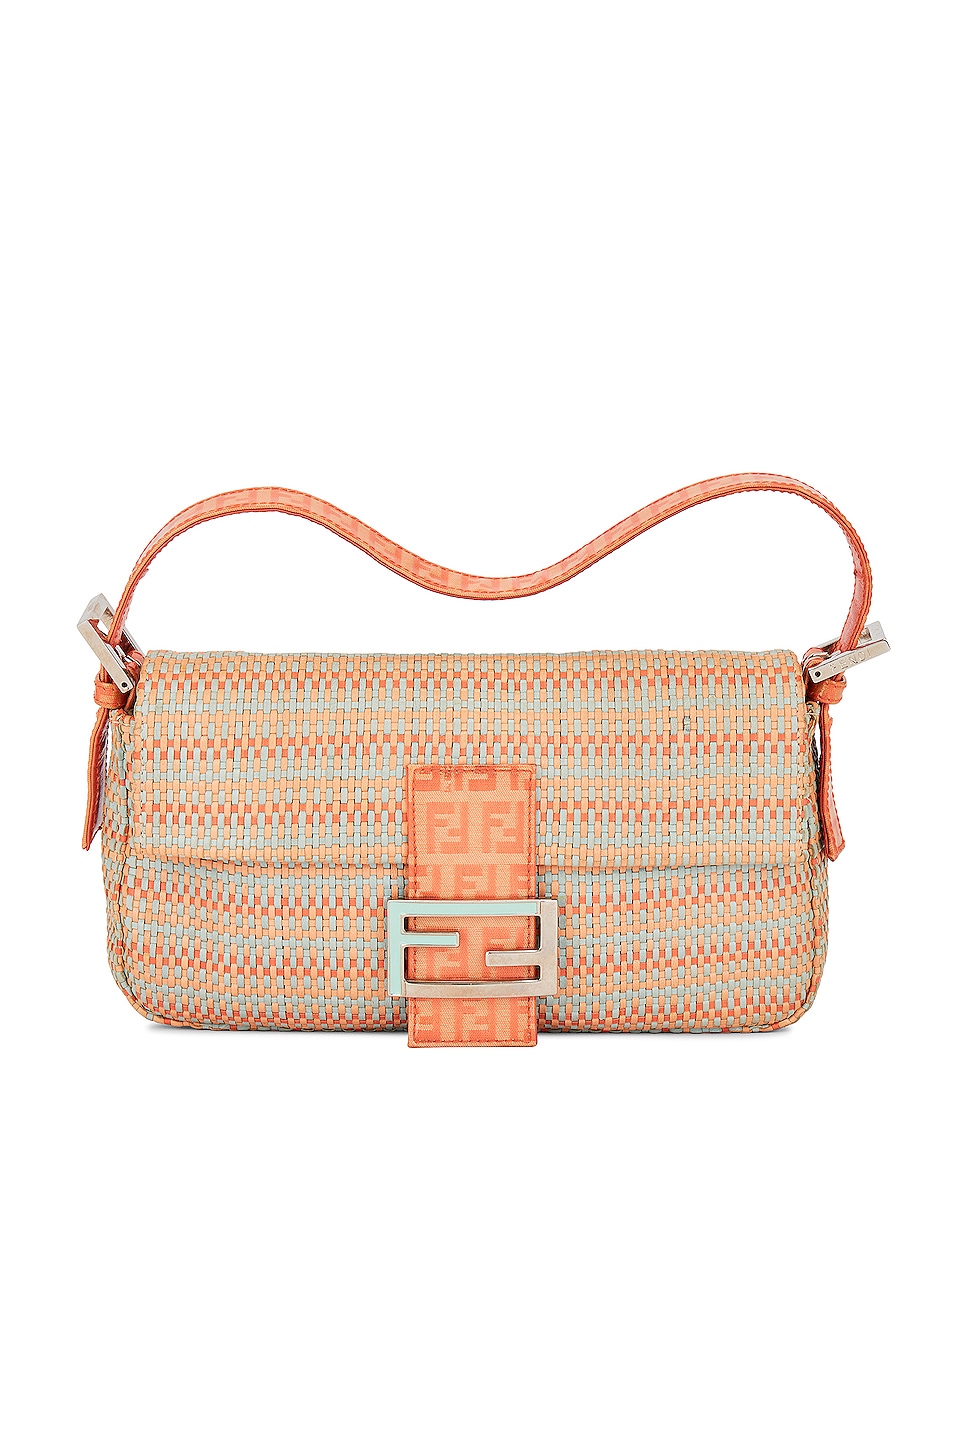 Fendi - Authenticated Baguette Handbag - Cloth Pink Plain for Women, Good Condition